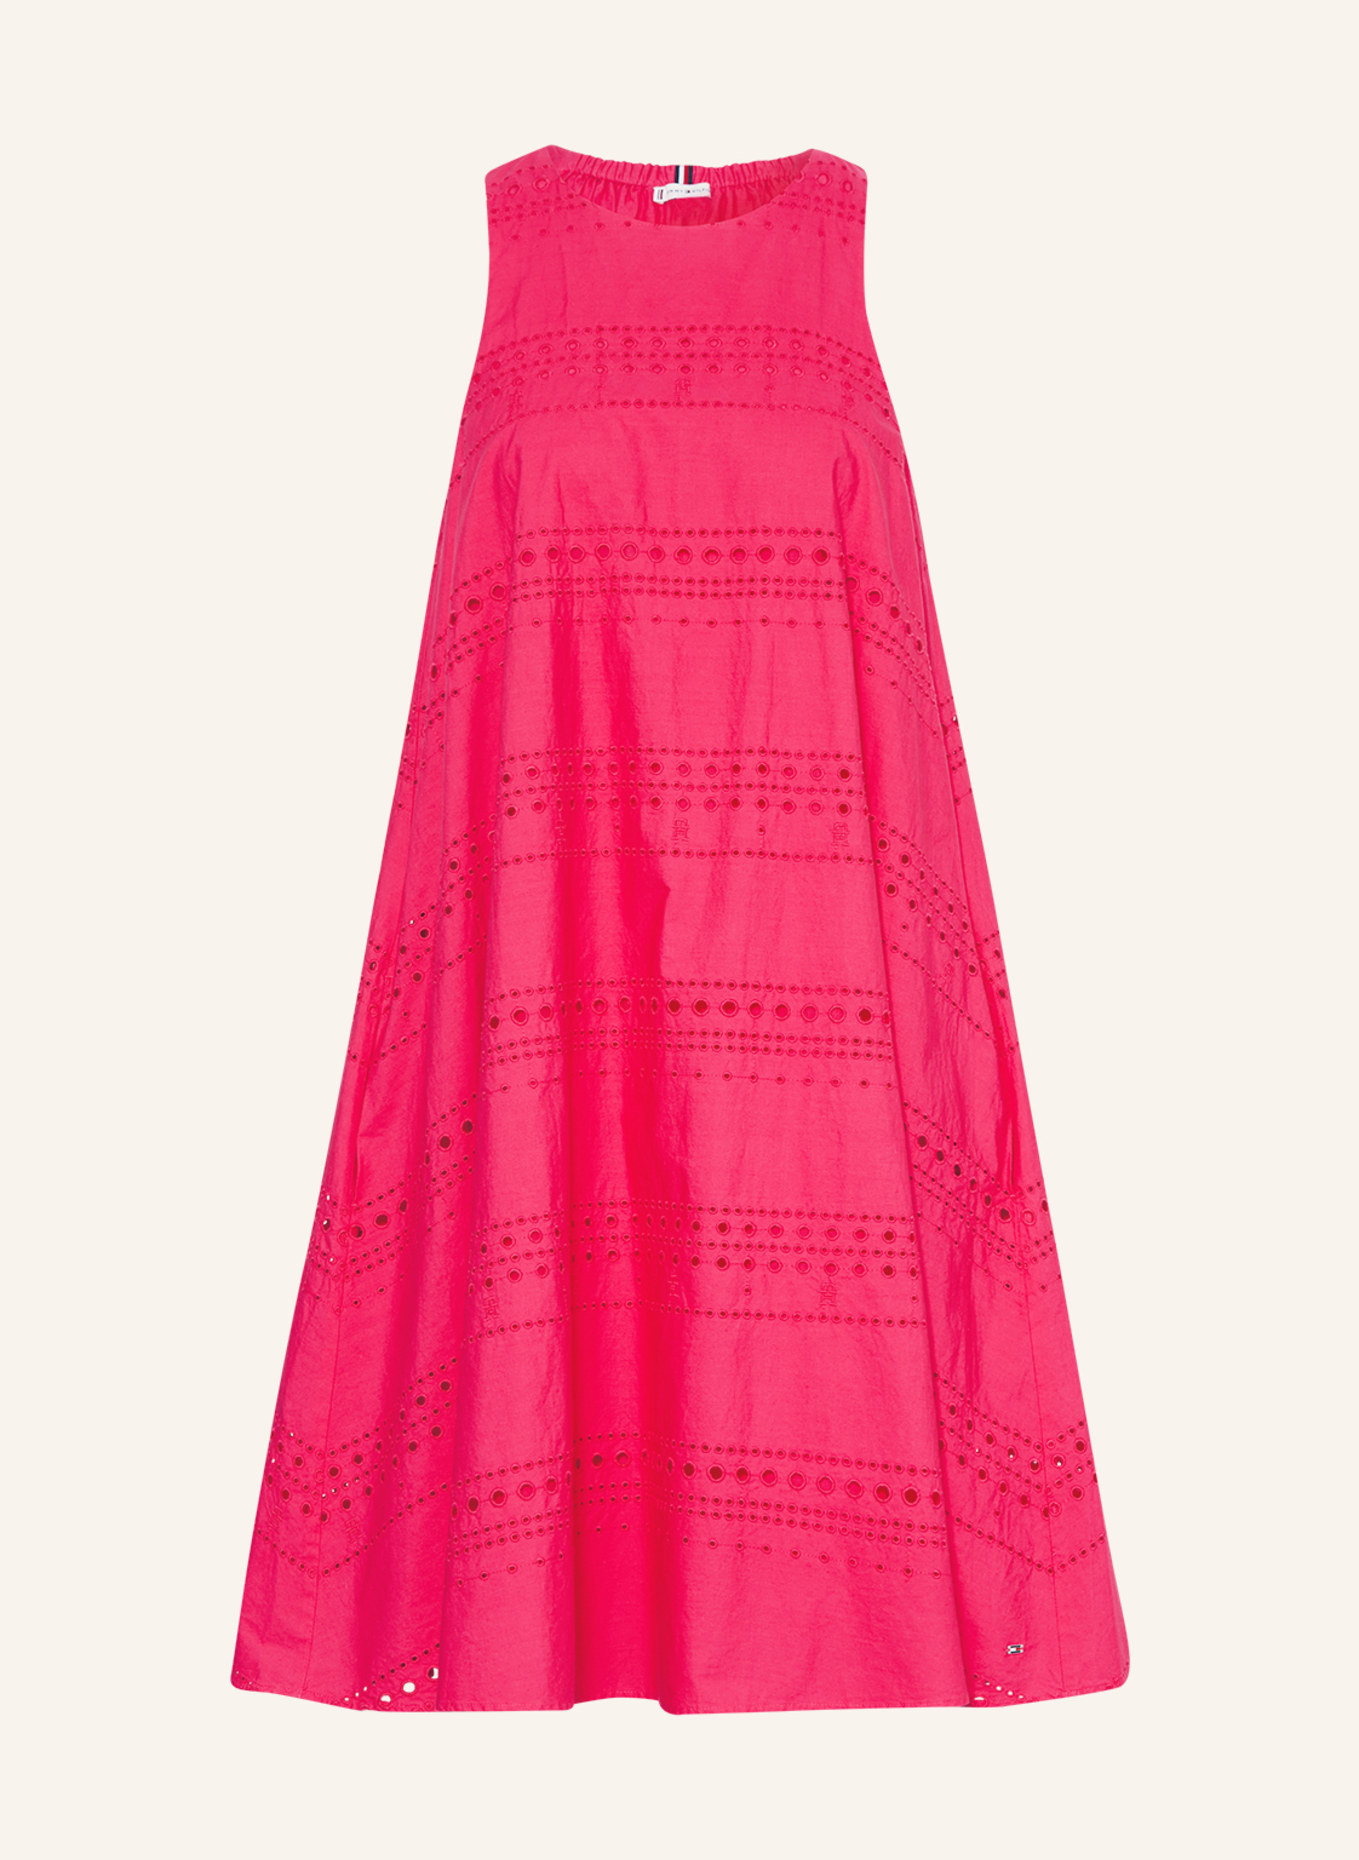 TOMMY HILFIGER Kleid aus Lochspitze, Farbe: PINK (Bild 1)